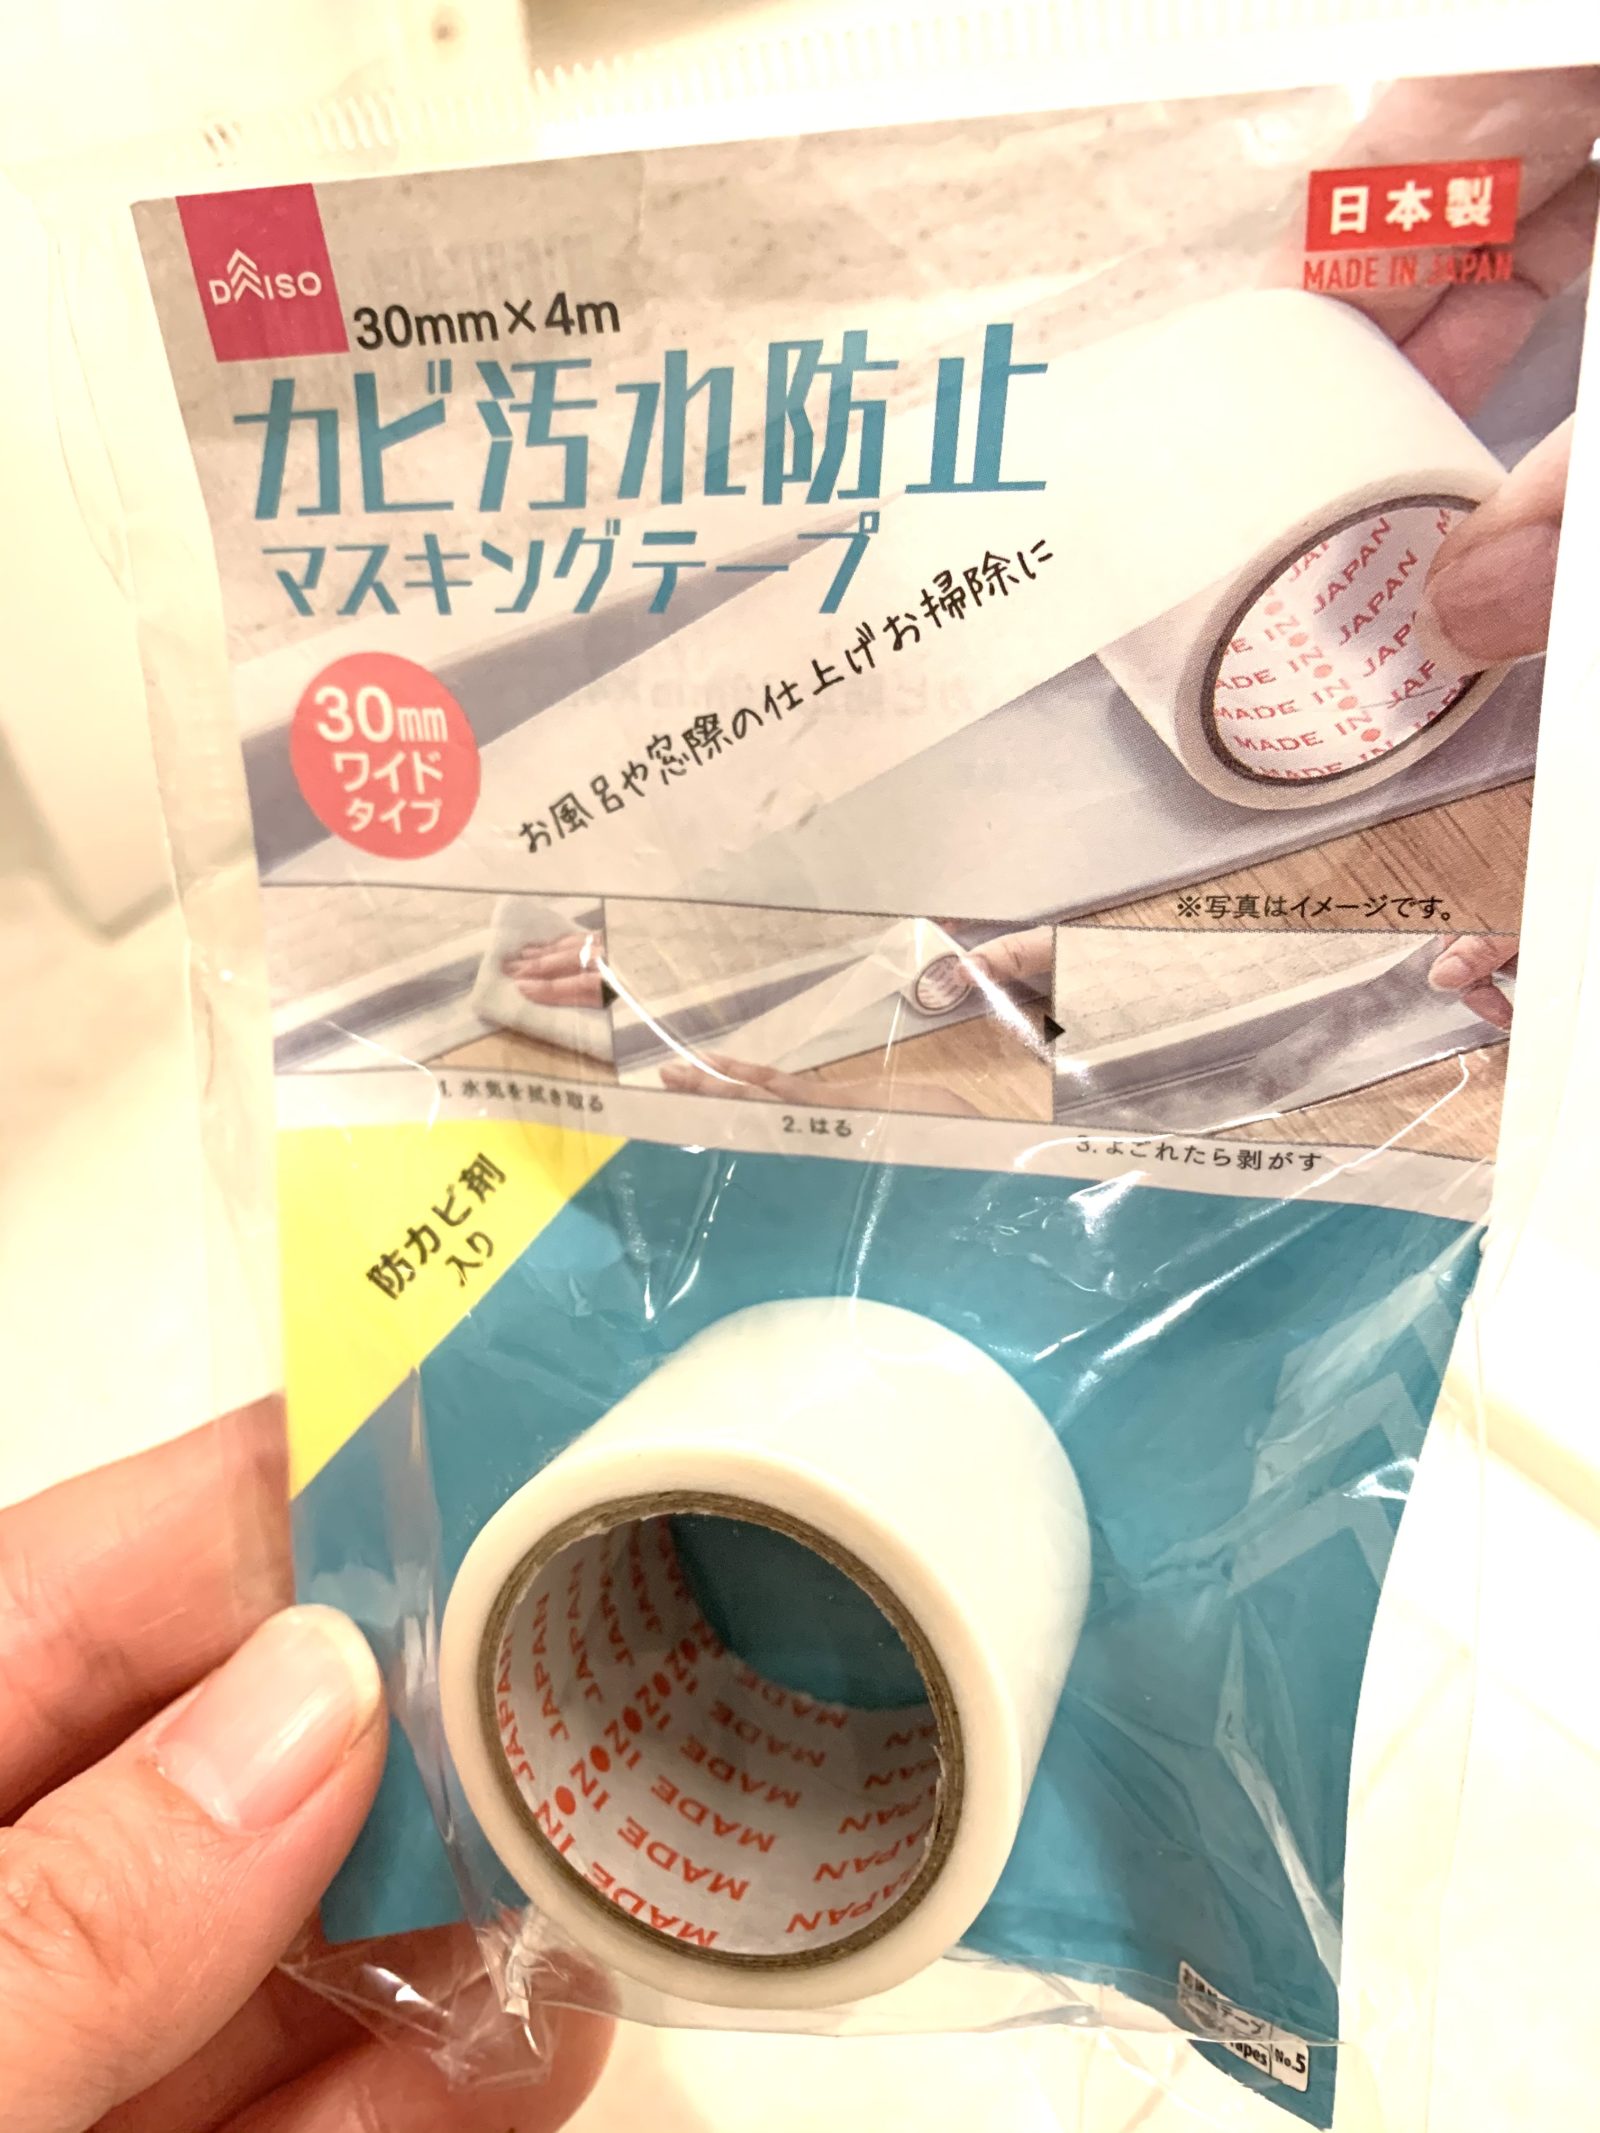 ダイソーの大人気商品「カビ汚れ防止マスキングテープ」を正直レポ | ぎゅってWeb